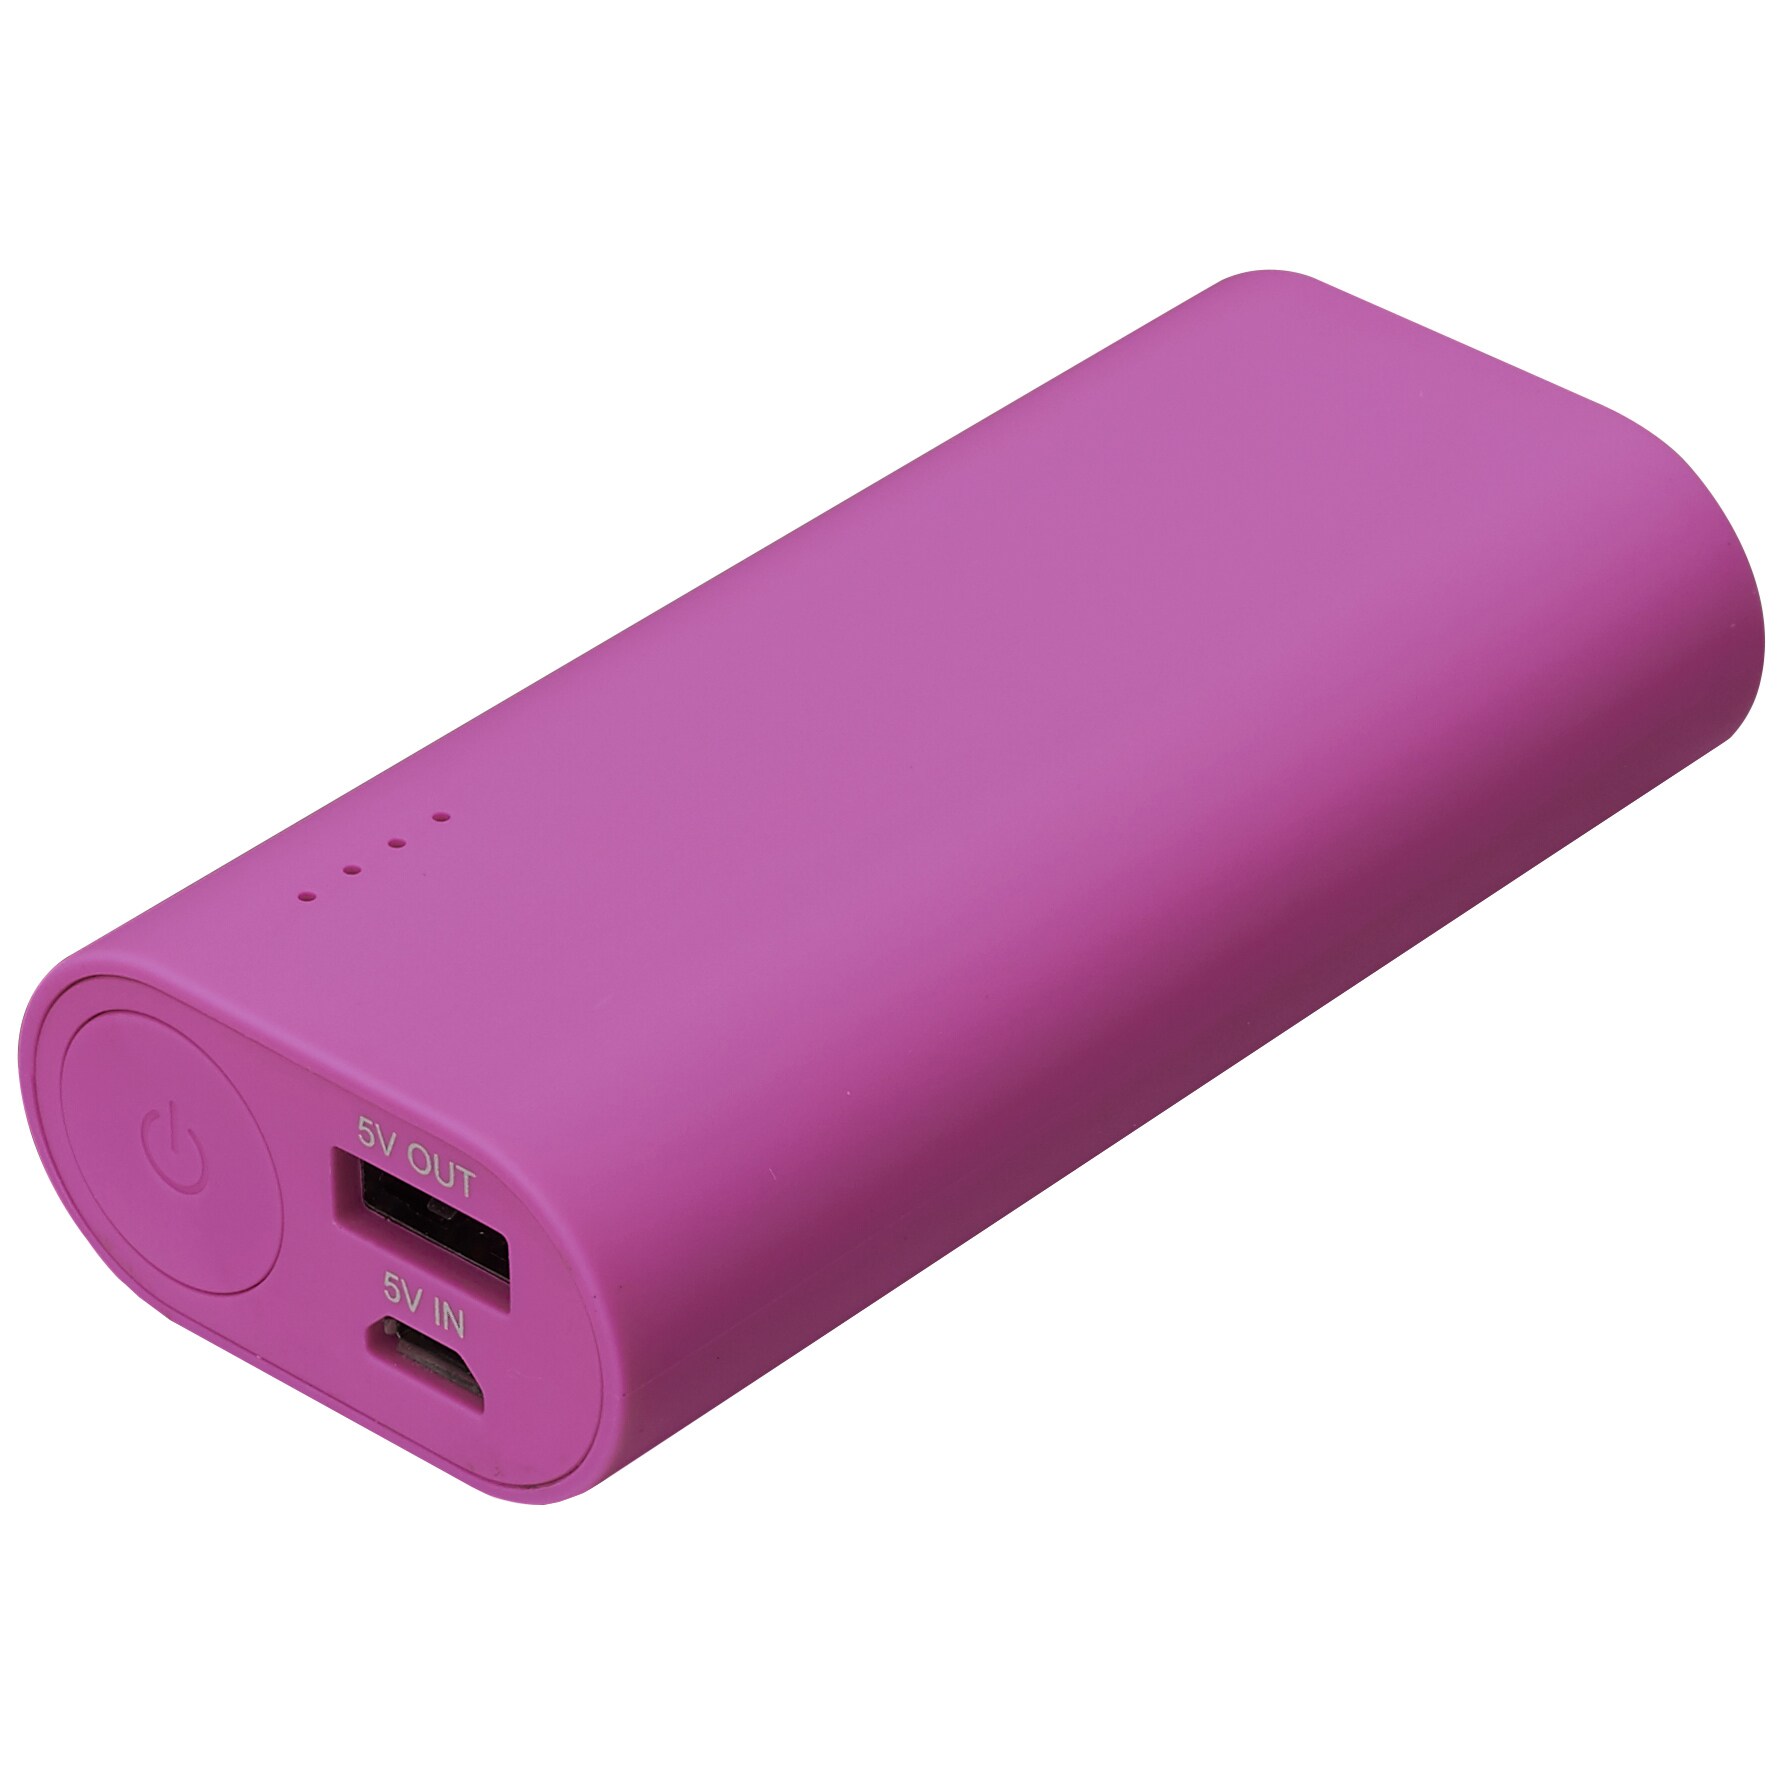 Goji powerbank - 6700 mAh - pink | Elgiganten